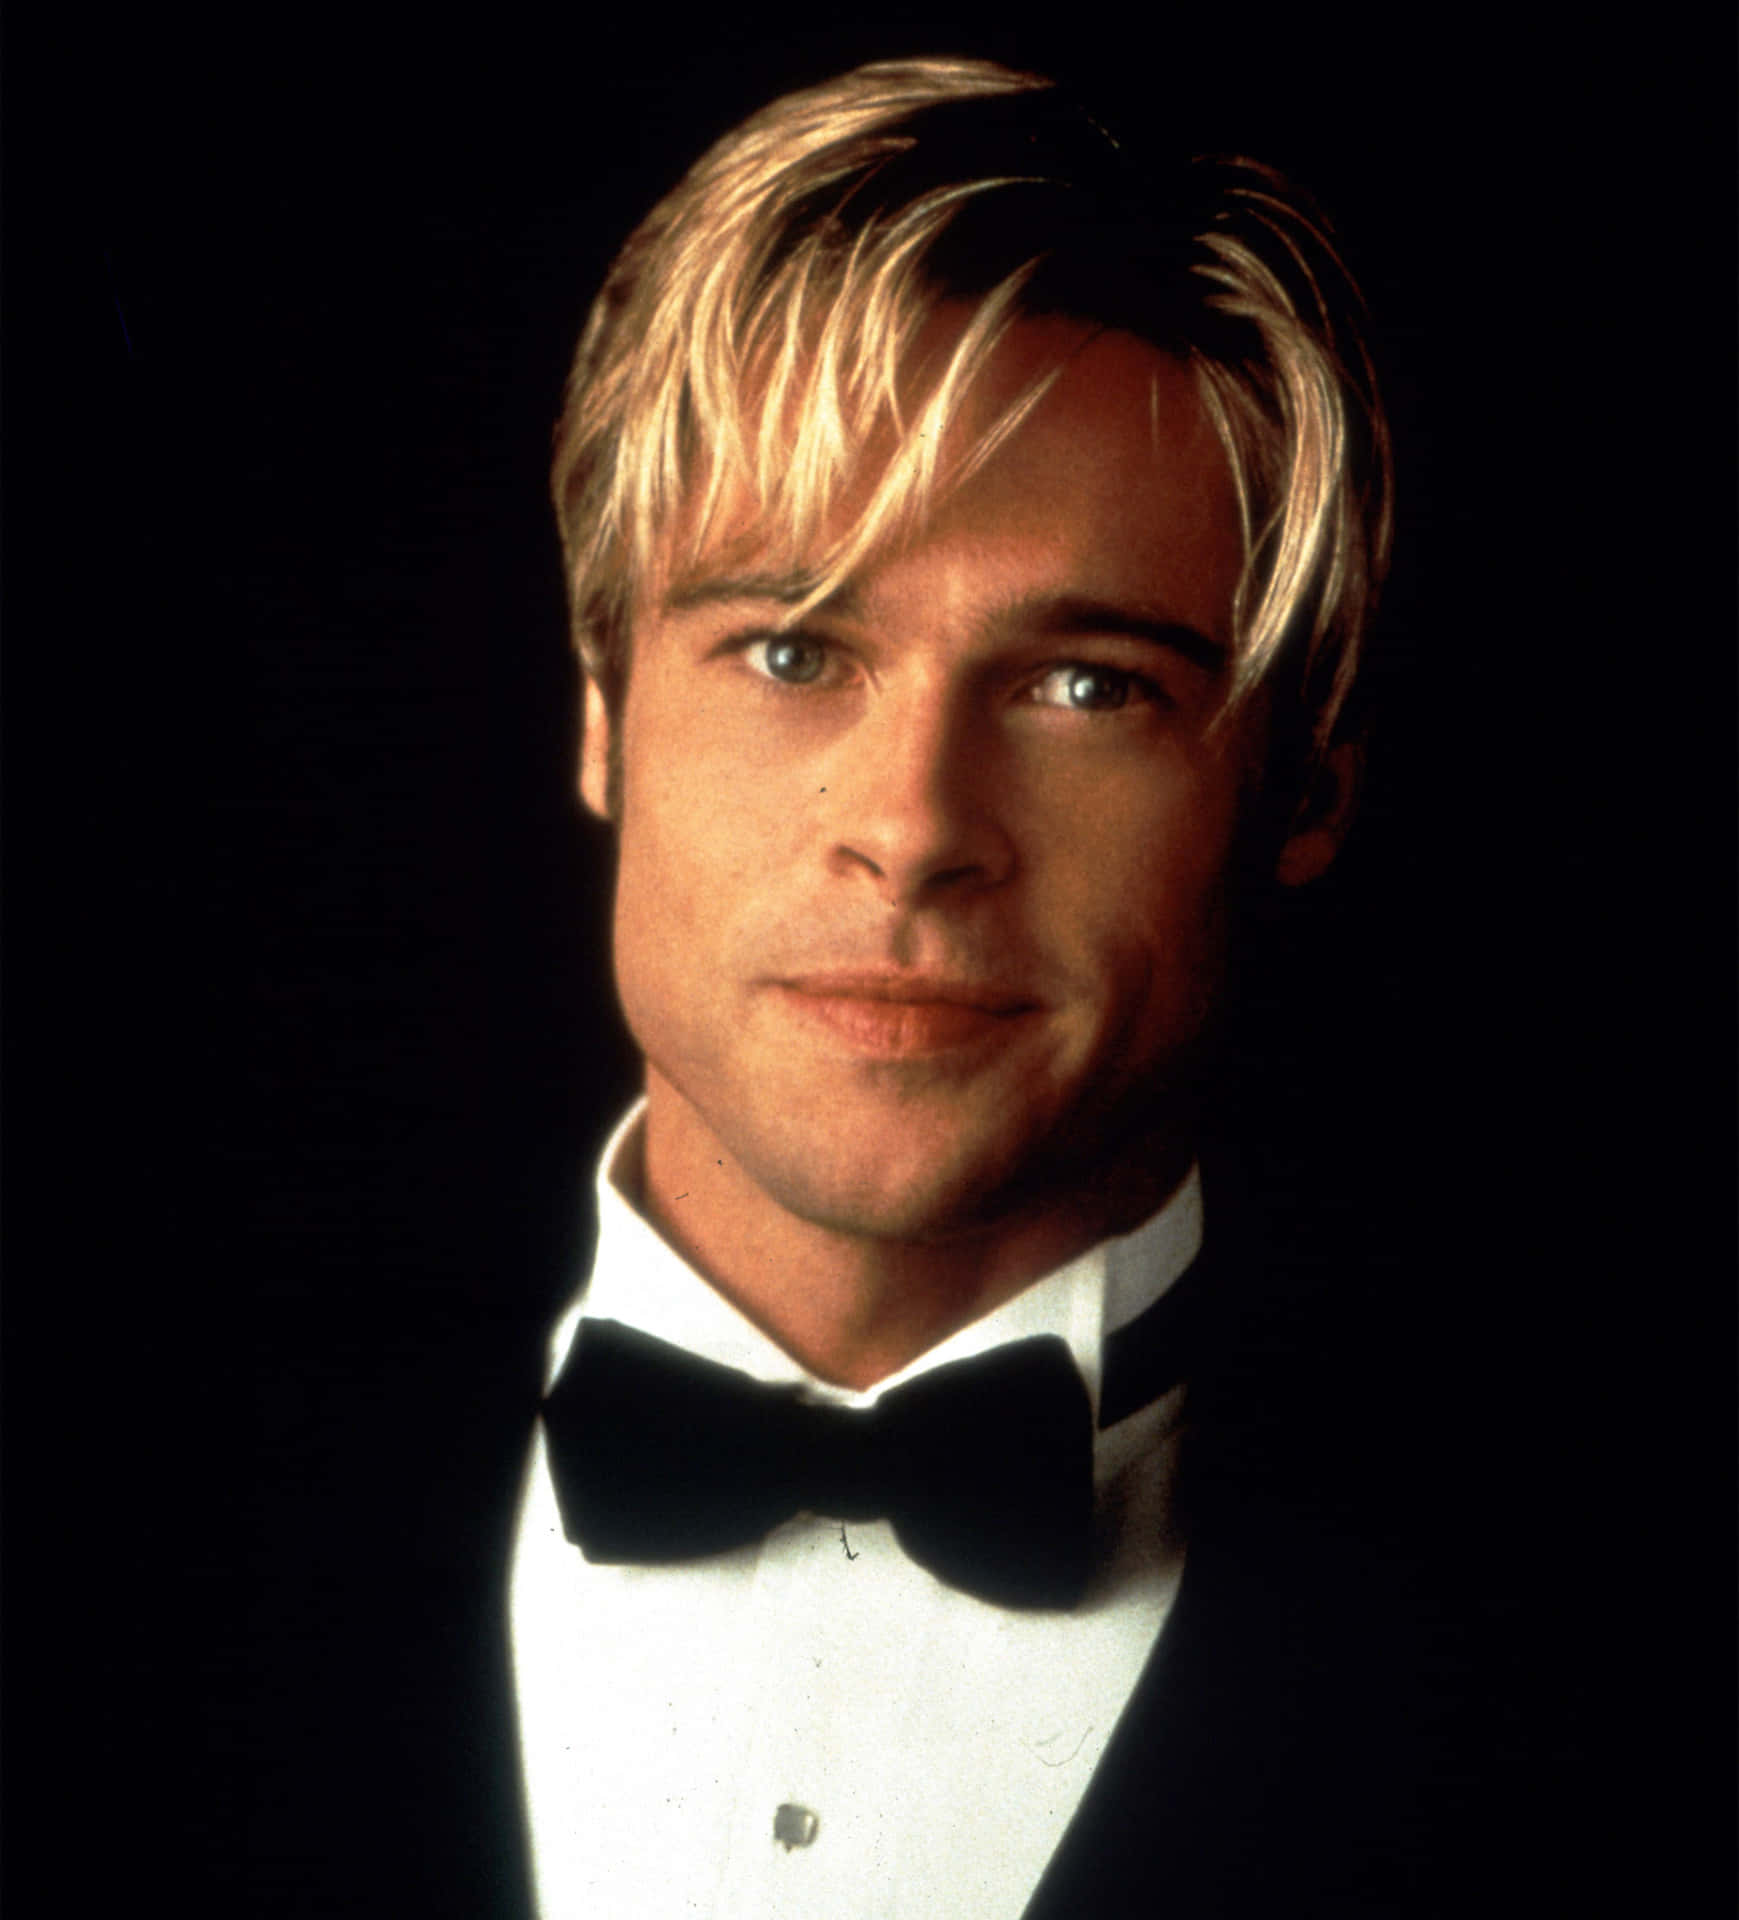 Brad Pitt - Award-Winning Actor